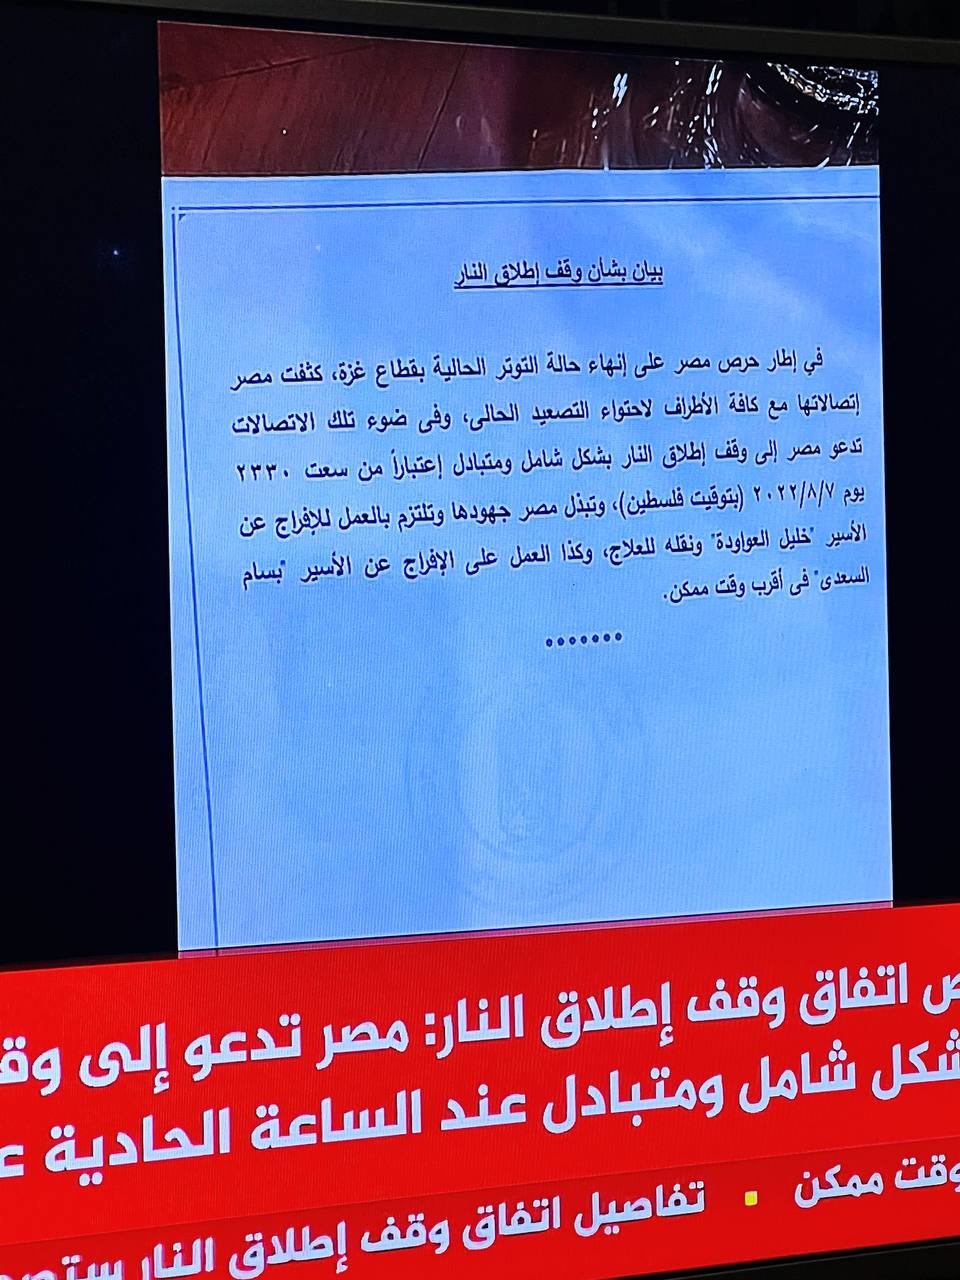 نصّ اتّفاق النار برعاية مصرية، والذي نشرته قناة الجزيرة